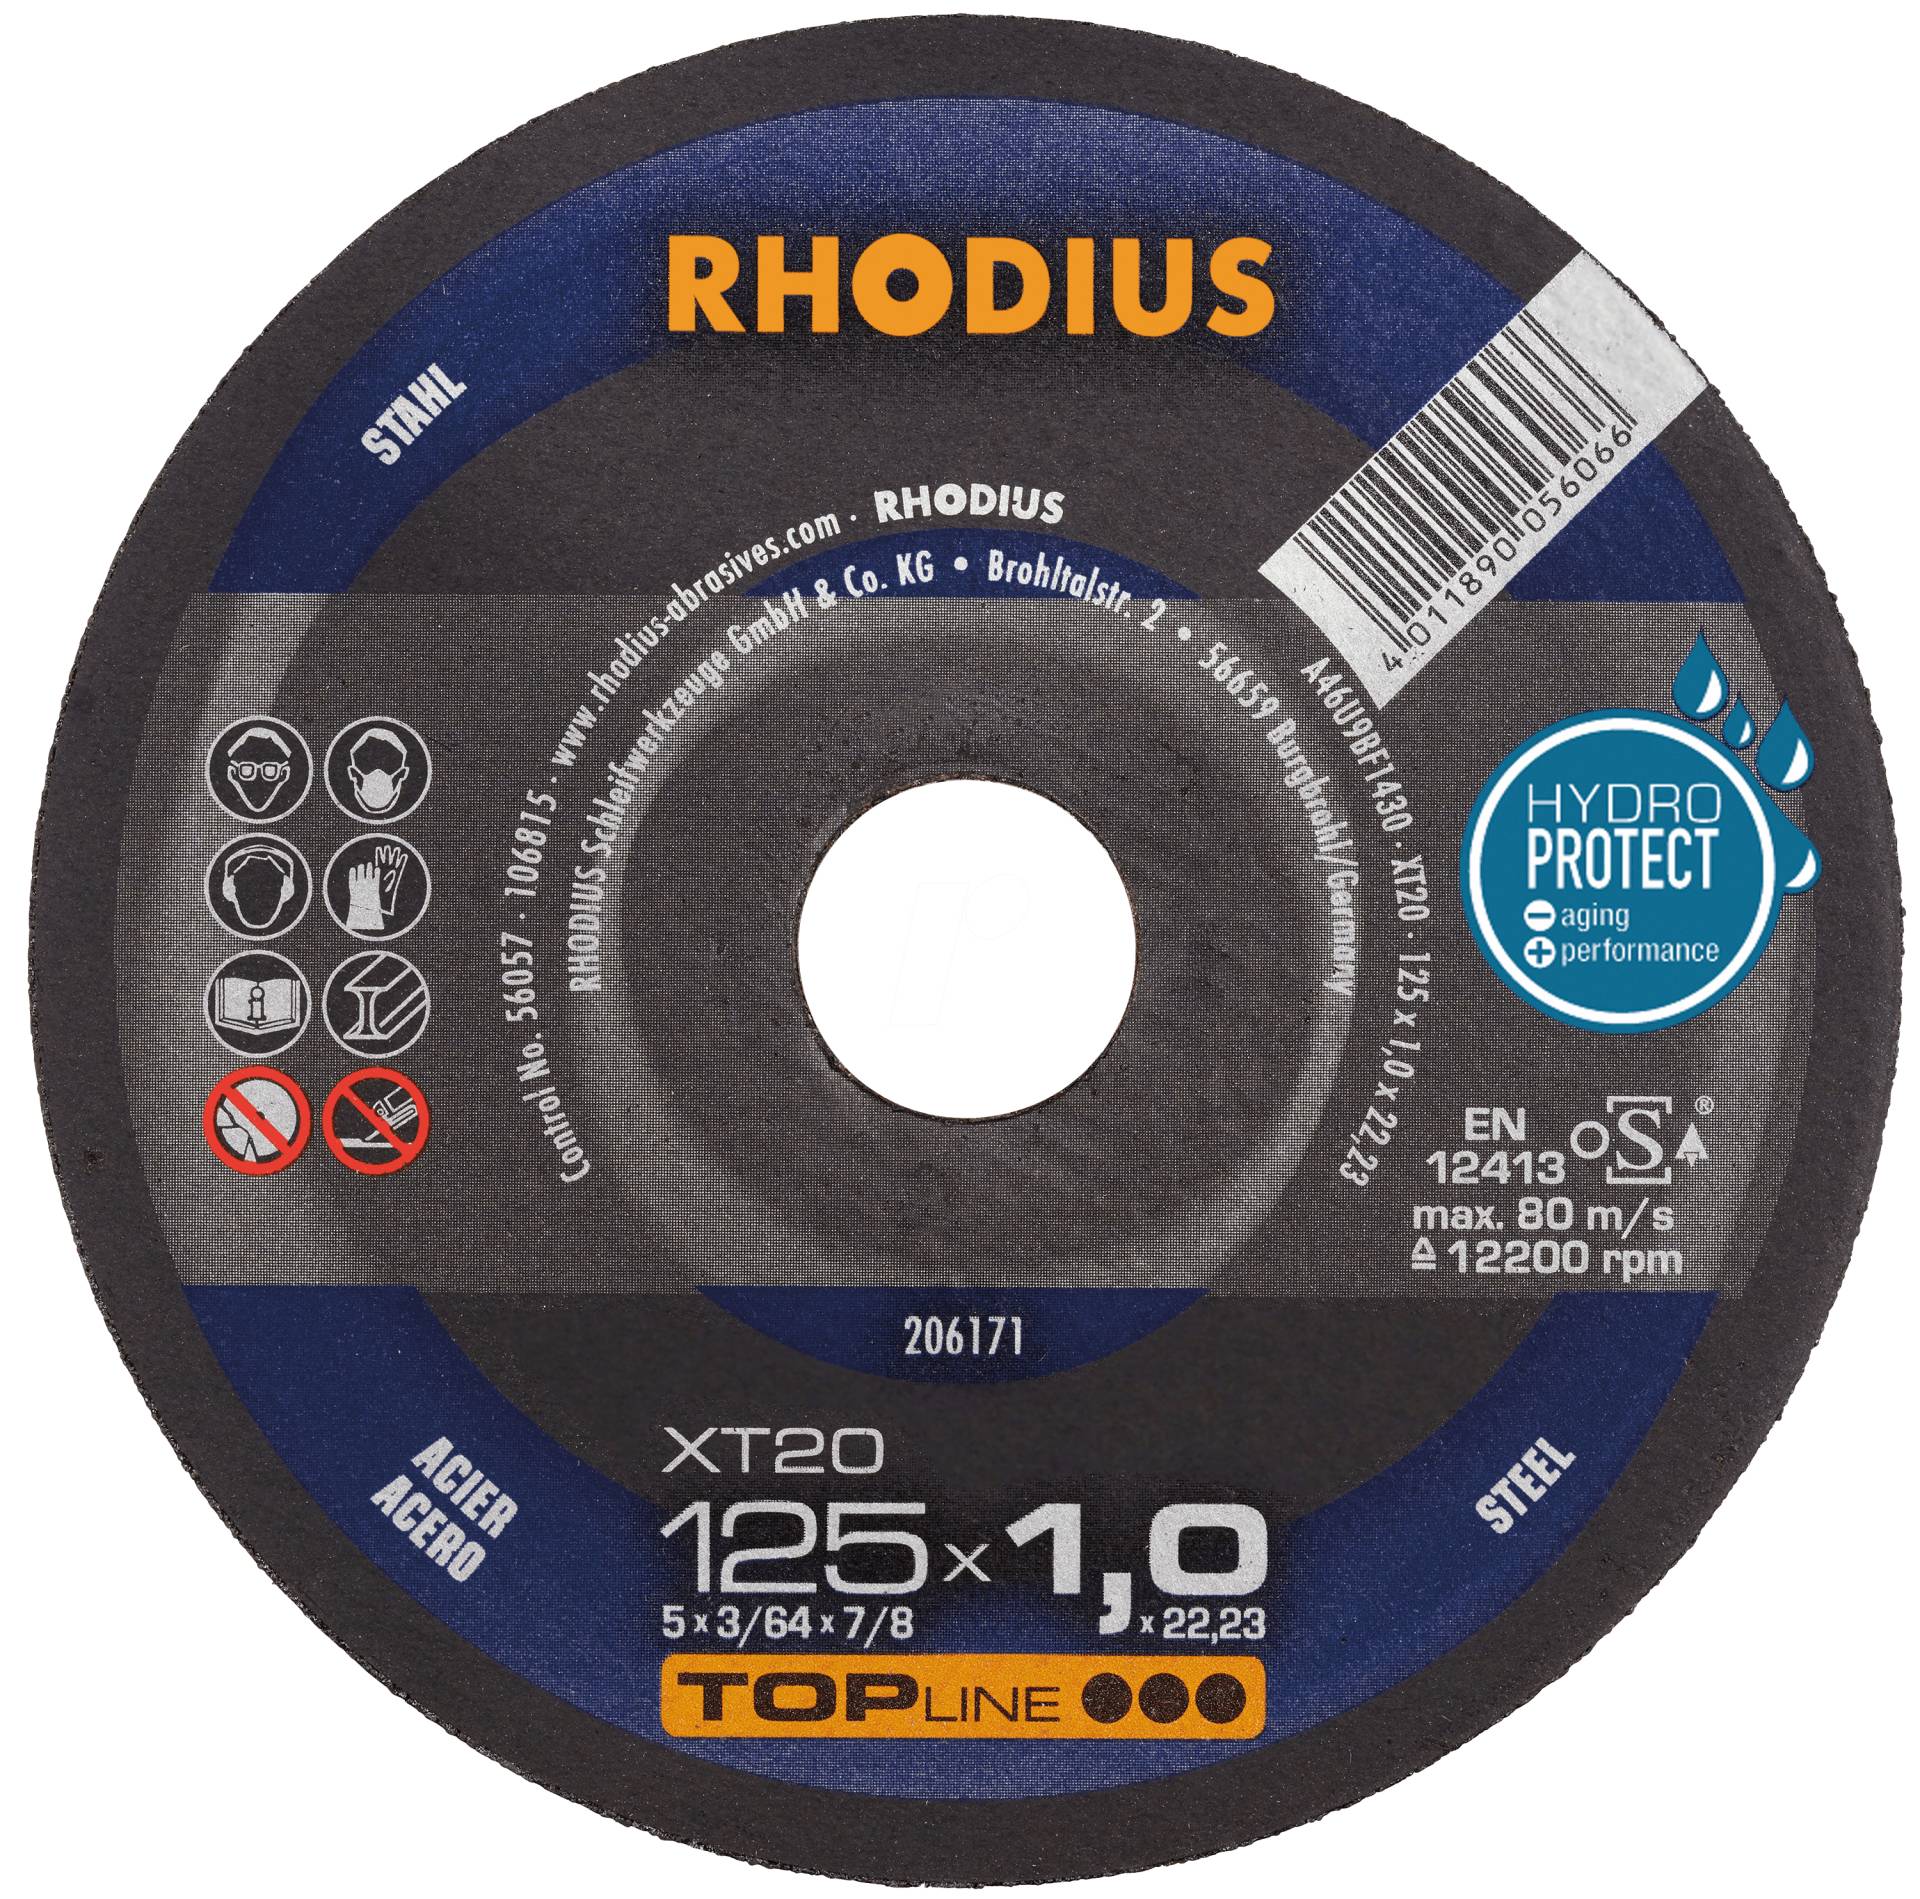 RHO 206171 - Trennscheibe, Stahl, 125 mm, 1 mm, XT20, 22,23 mm von Rhodius